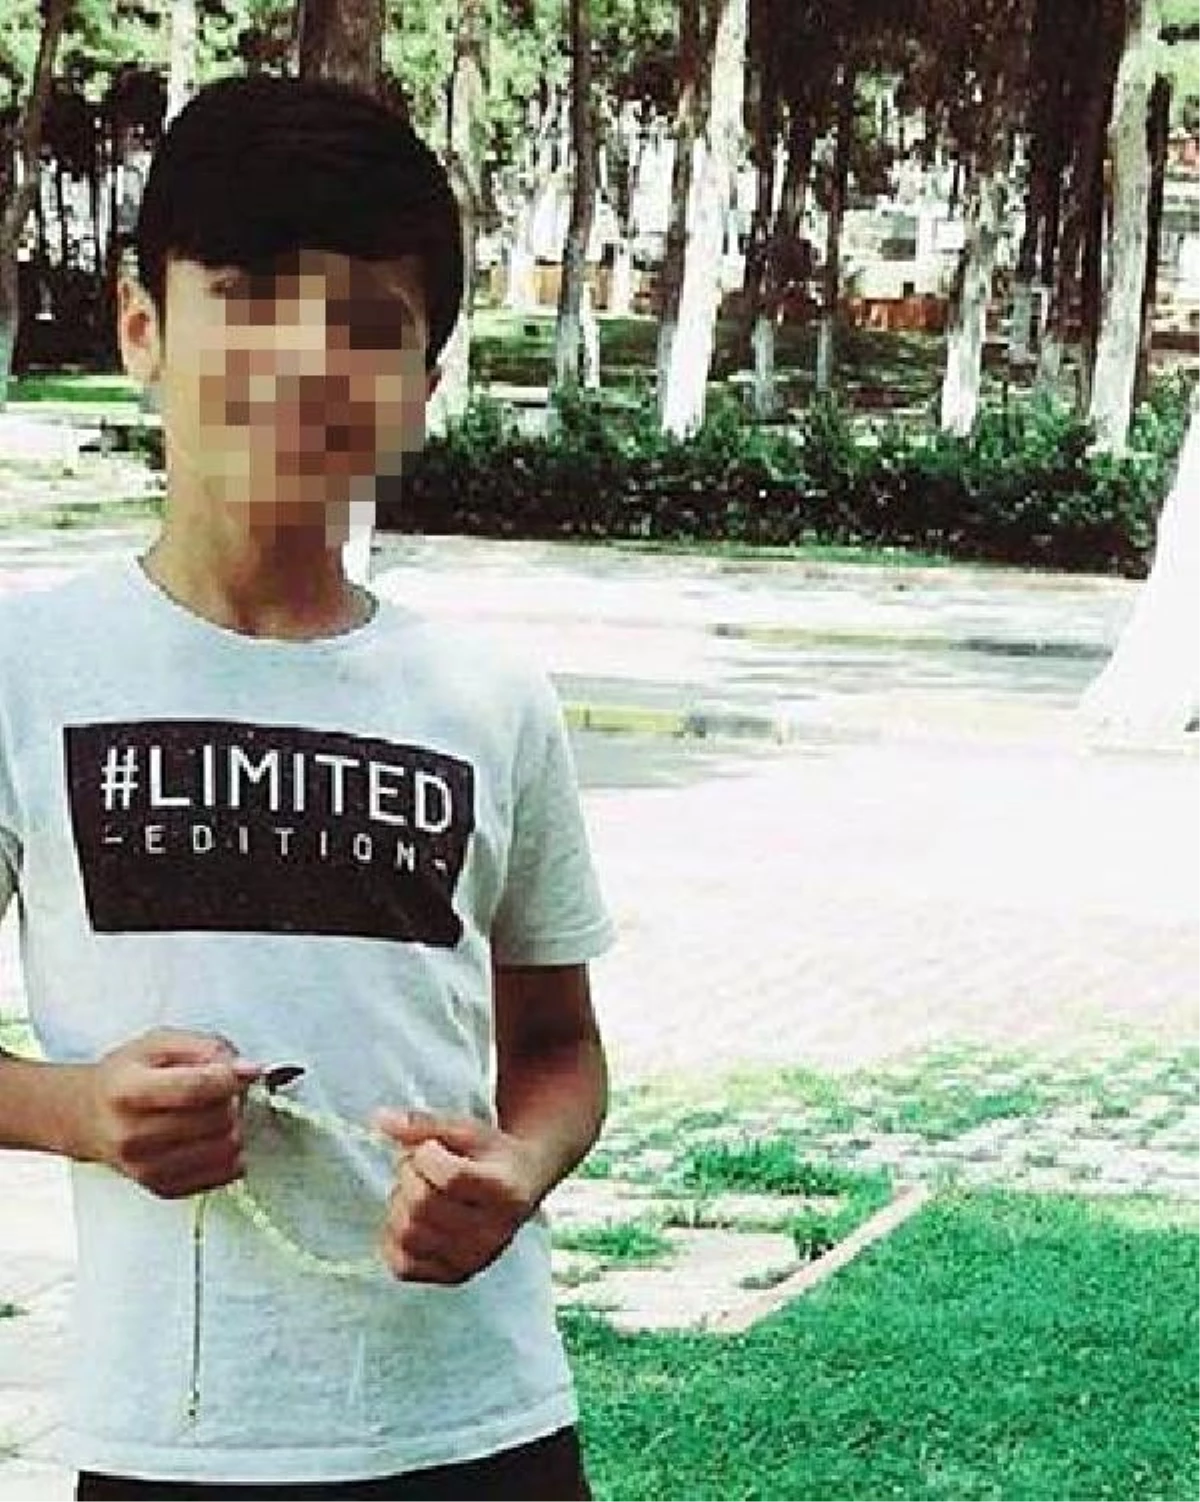 14 yaşındaki çocuk, tartıştığı arkadaşını öldürdü